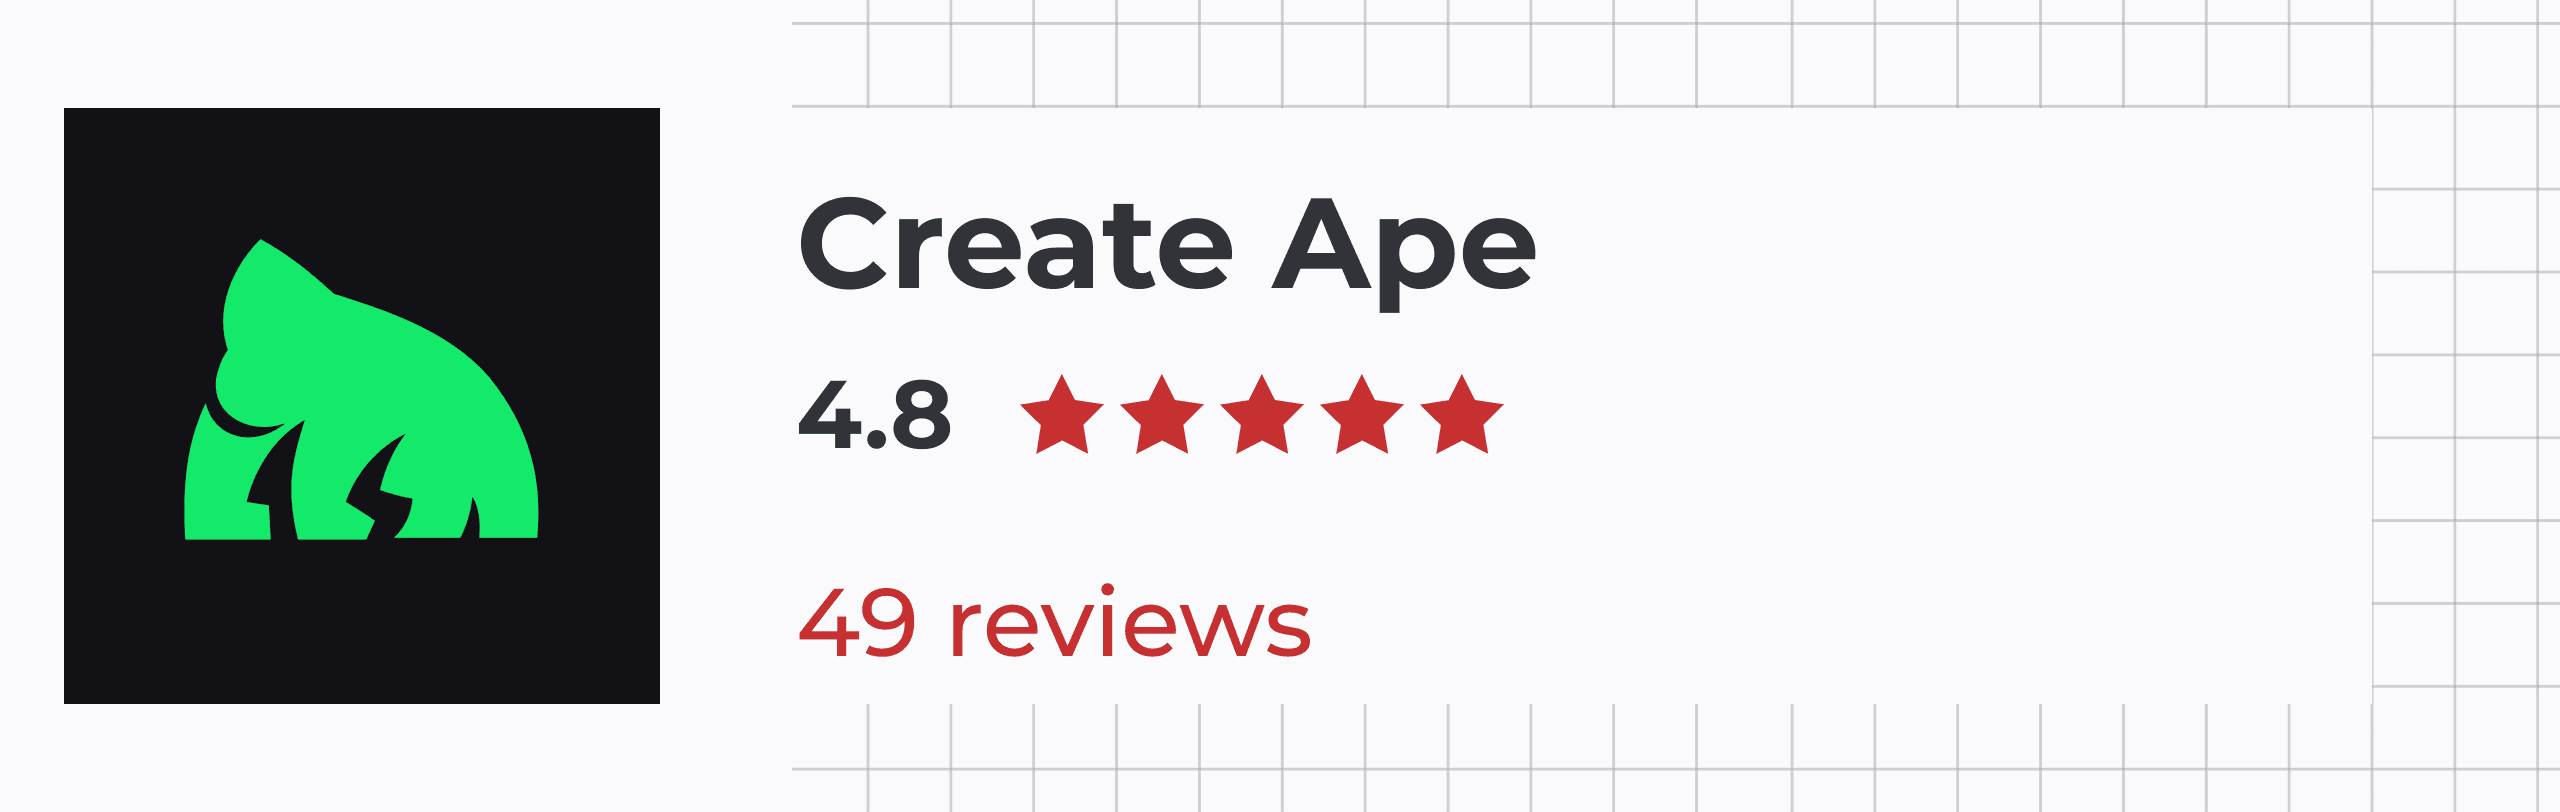 Create Ape